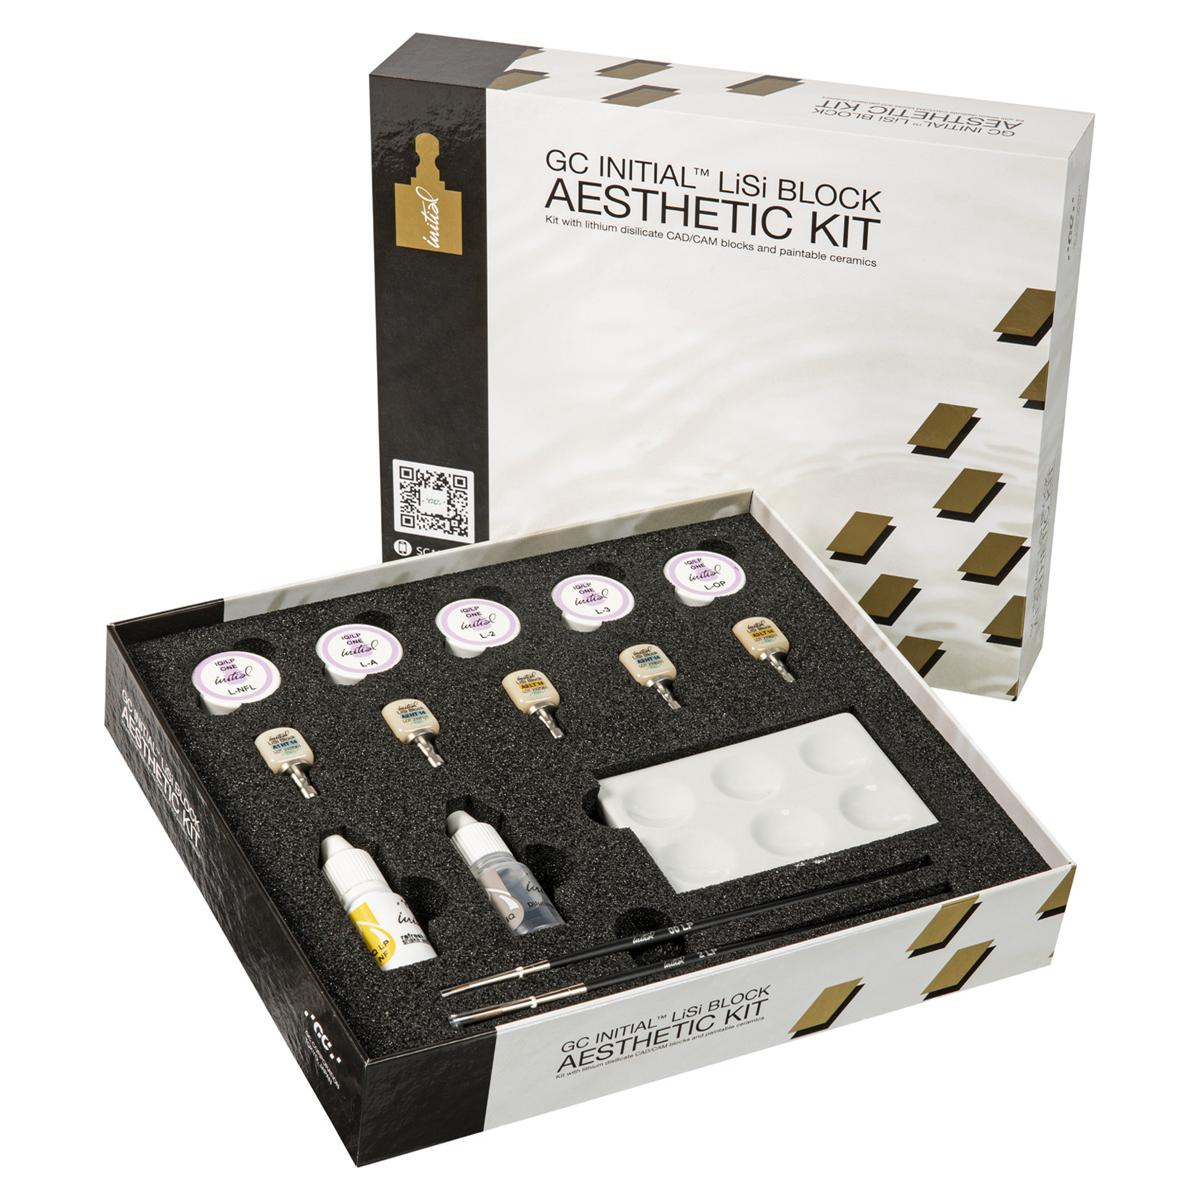 Initial LiSi Block Aesthetic Kit - REF. 901601